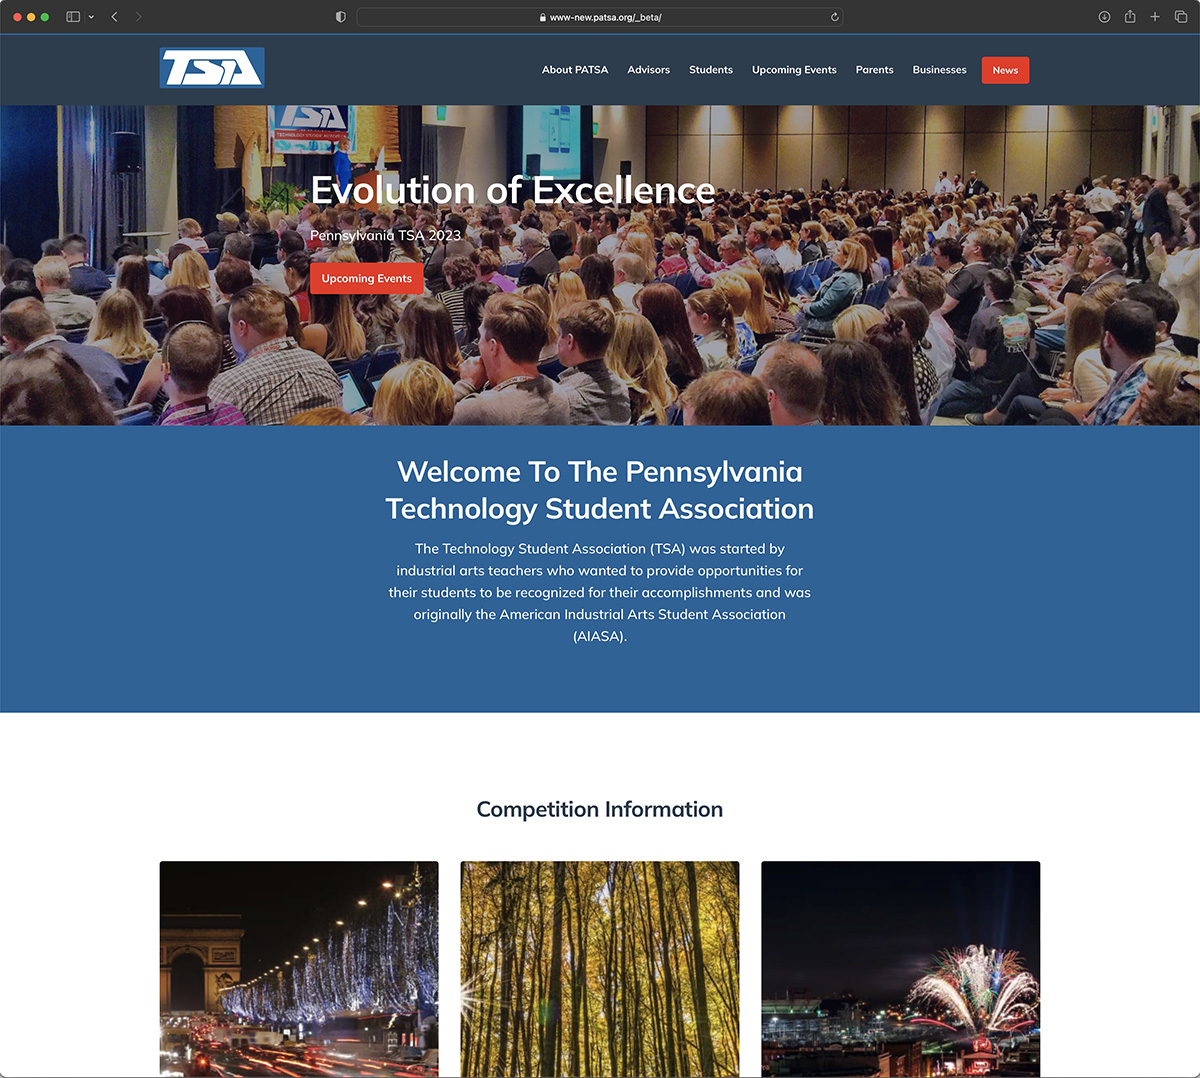 The PATSA Home Page